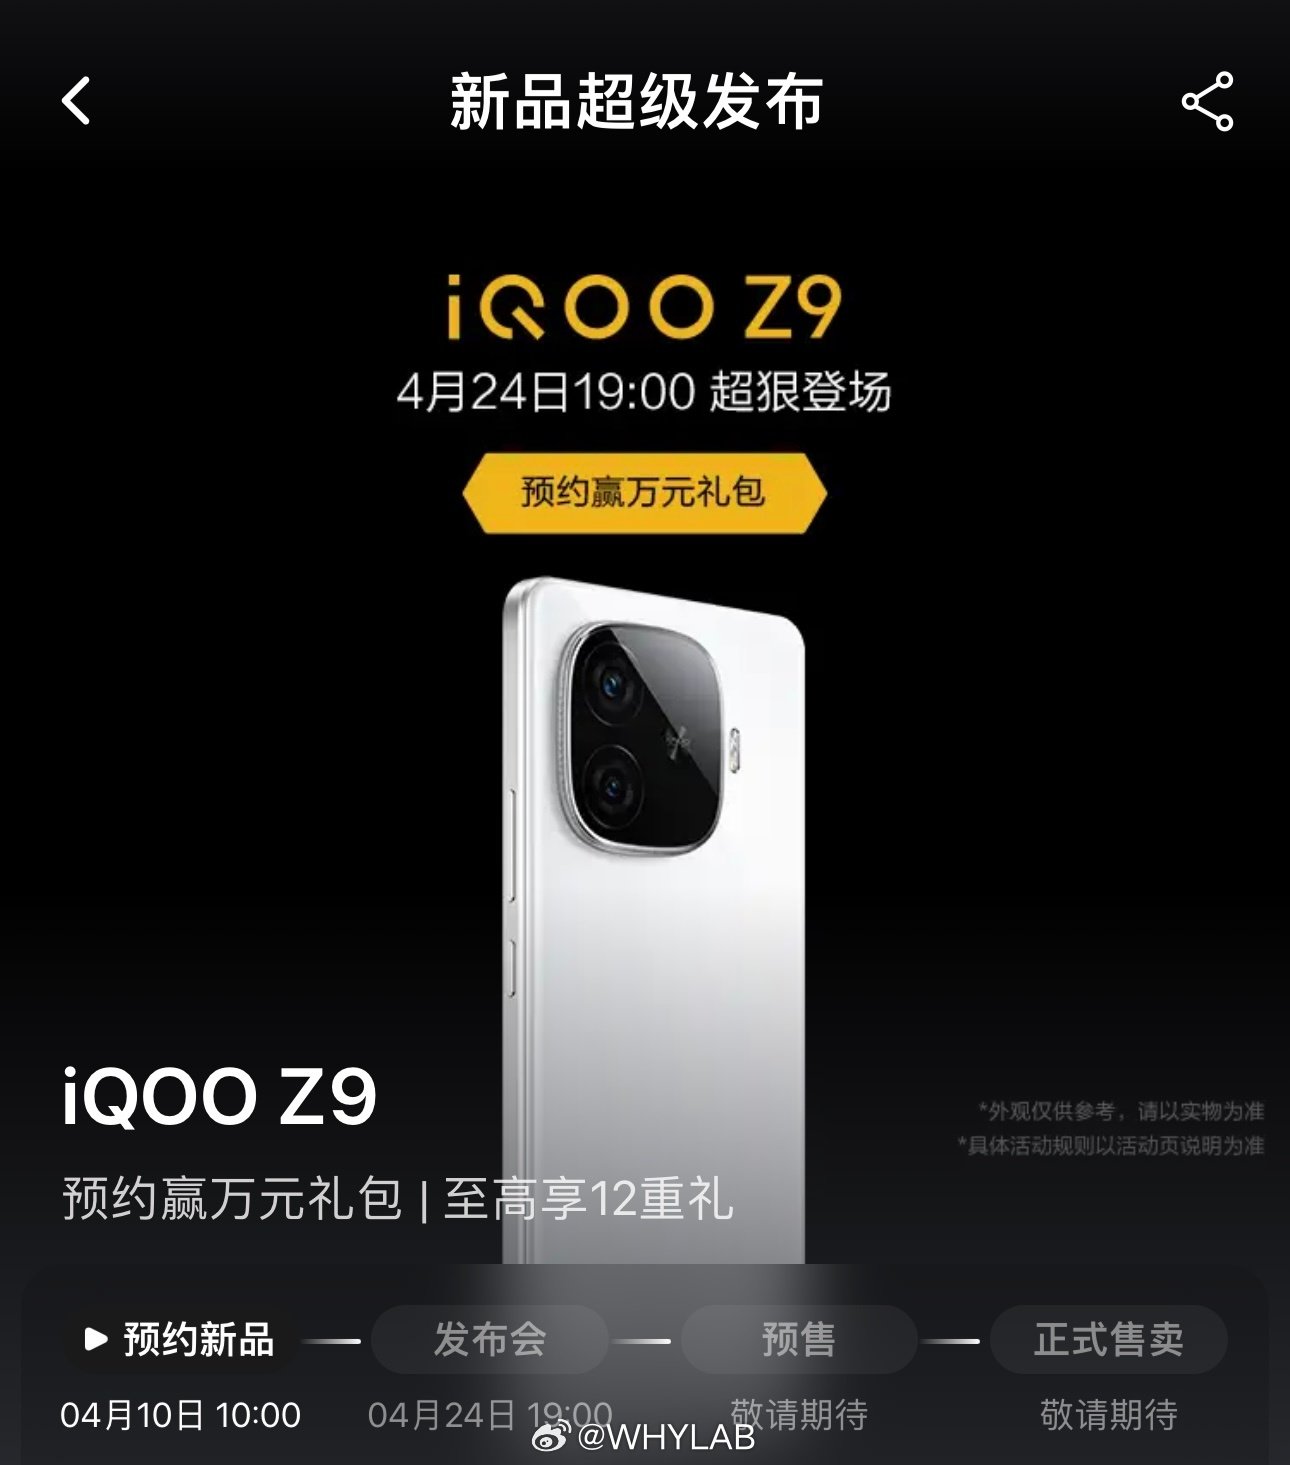 IQOO Z9 design